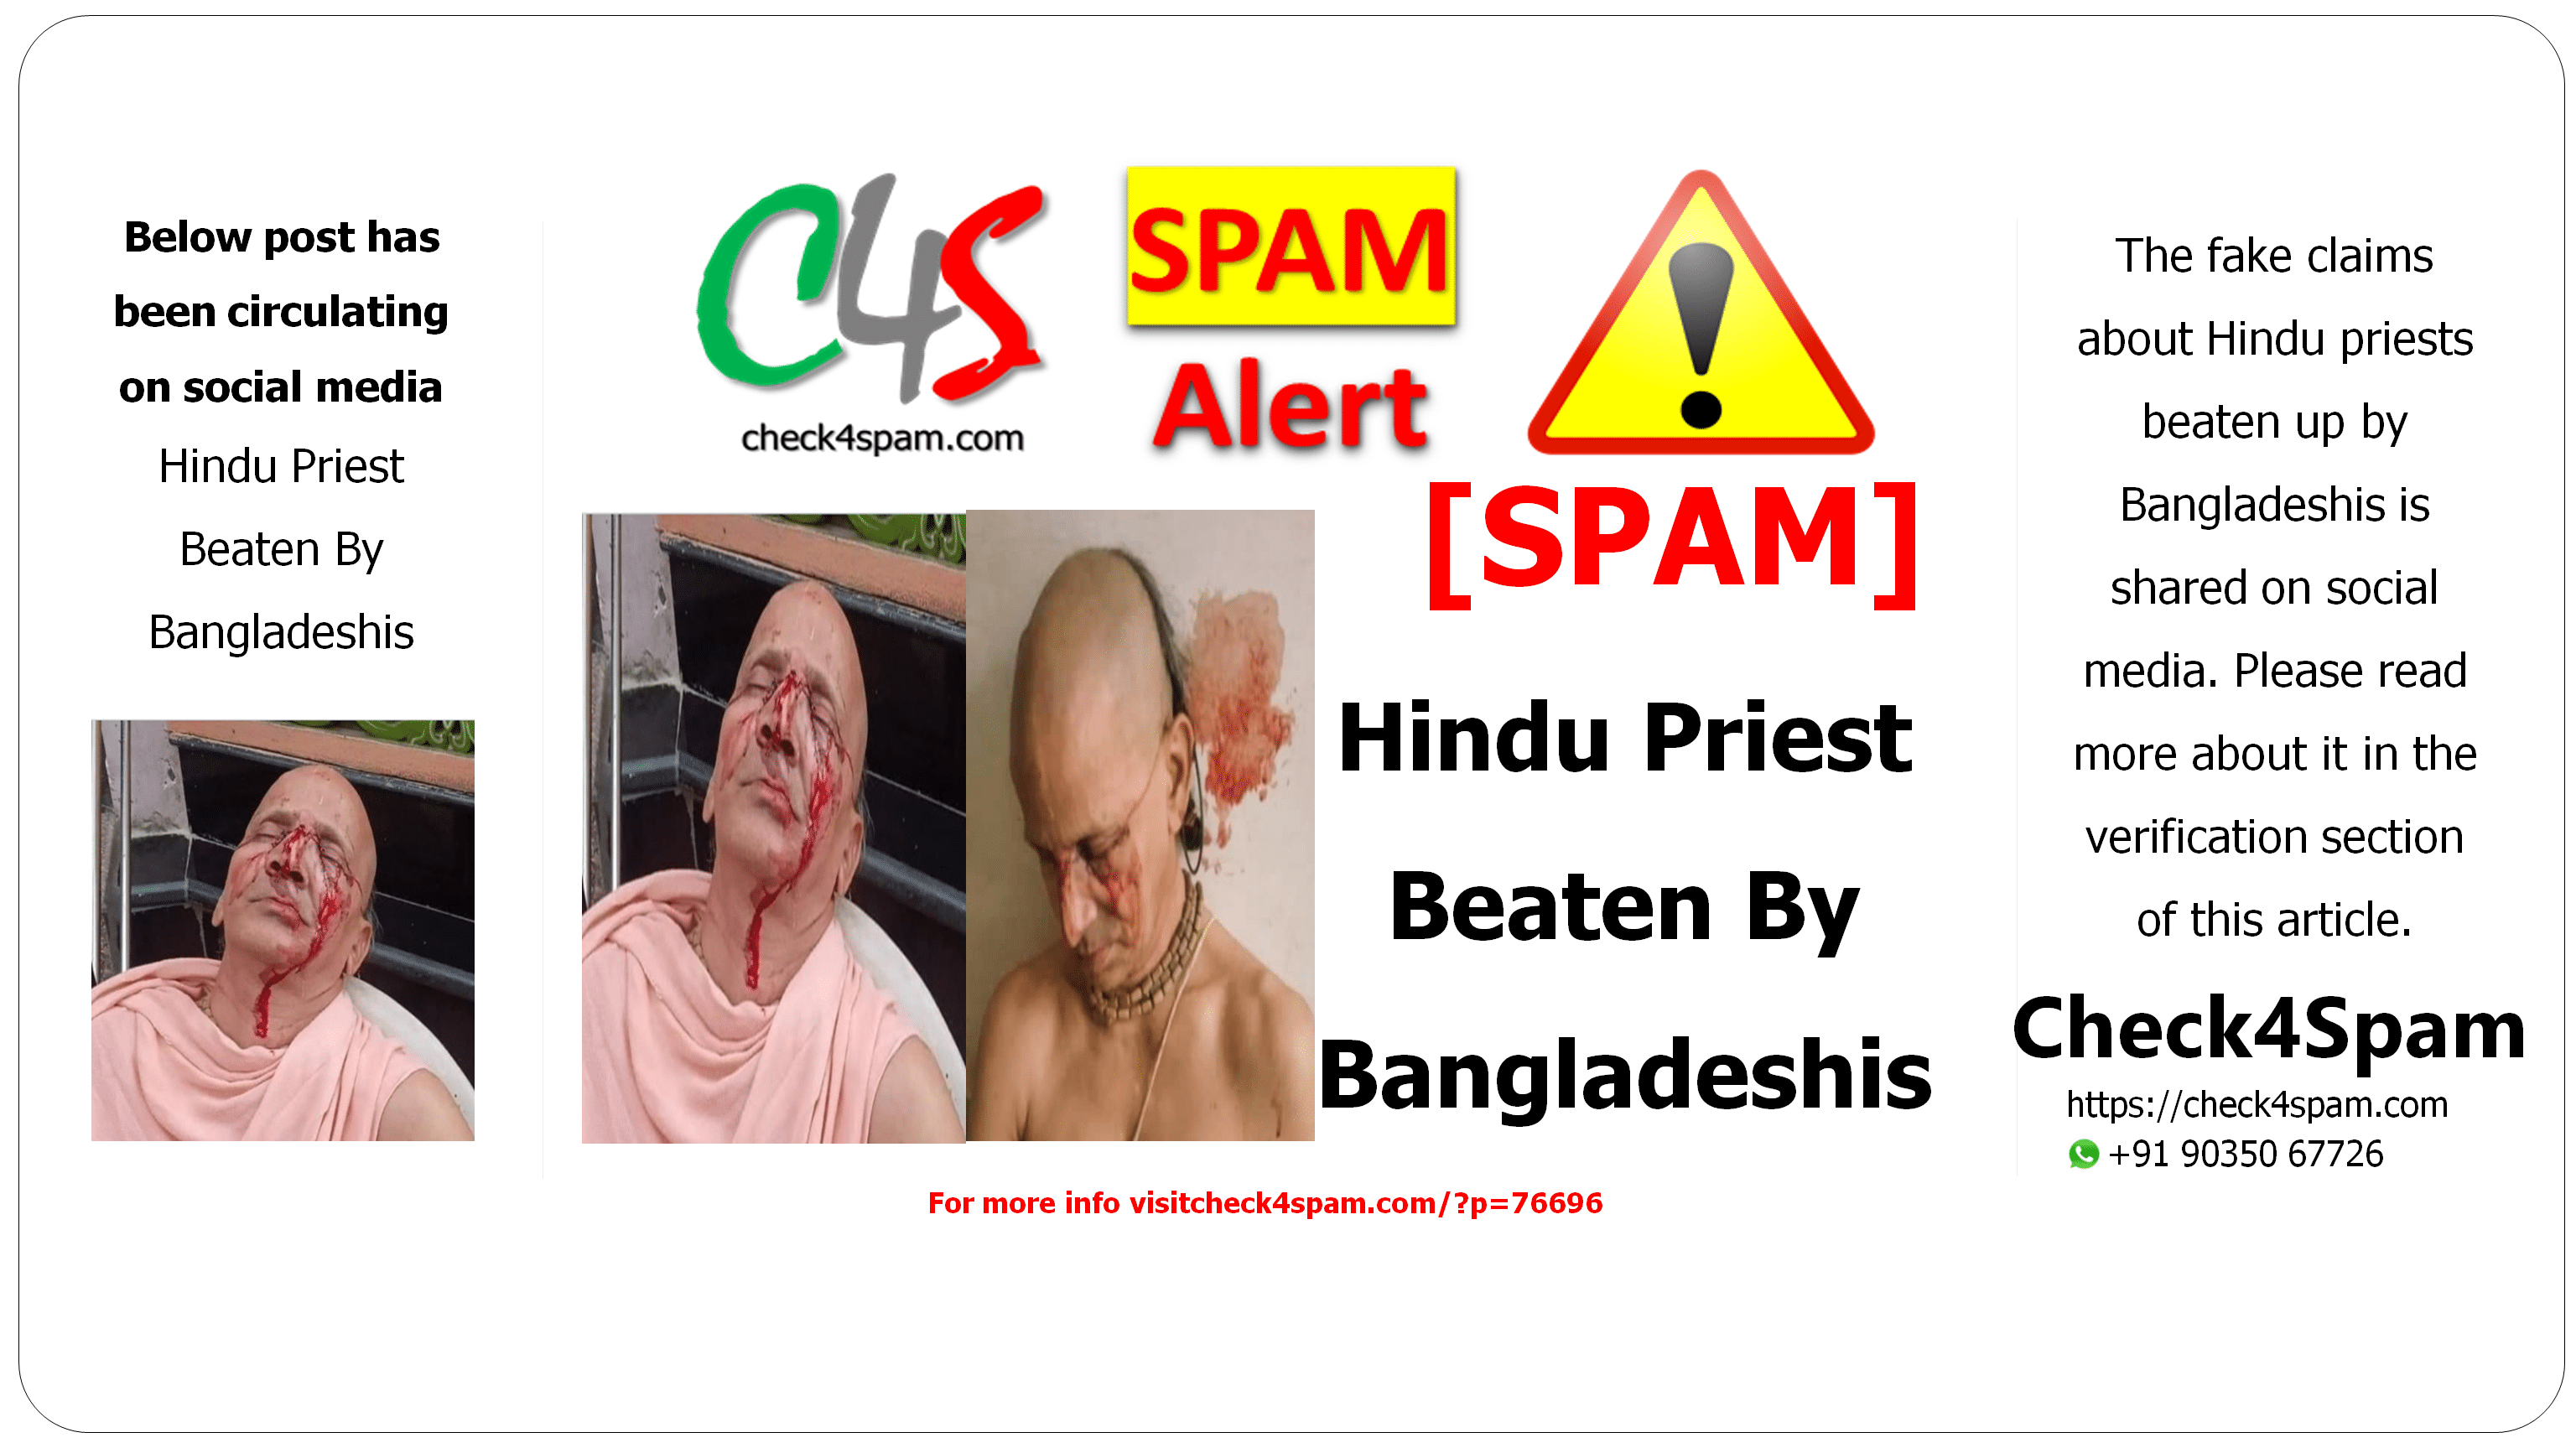 Hindu Priest Beaten By Bangladeshis